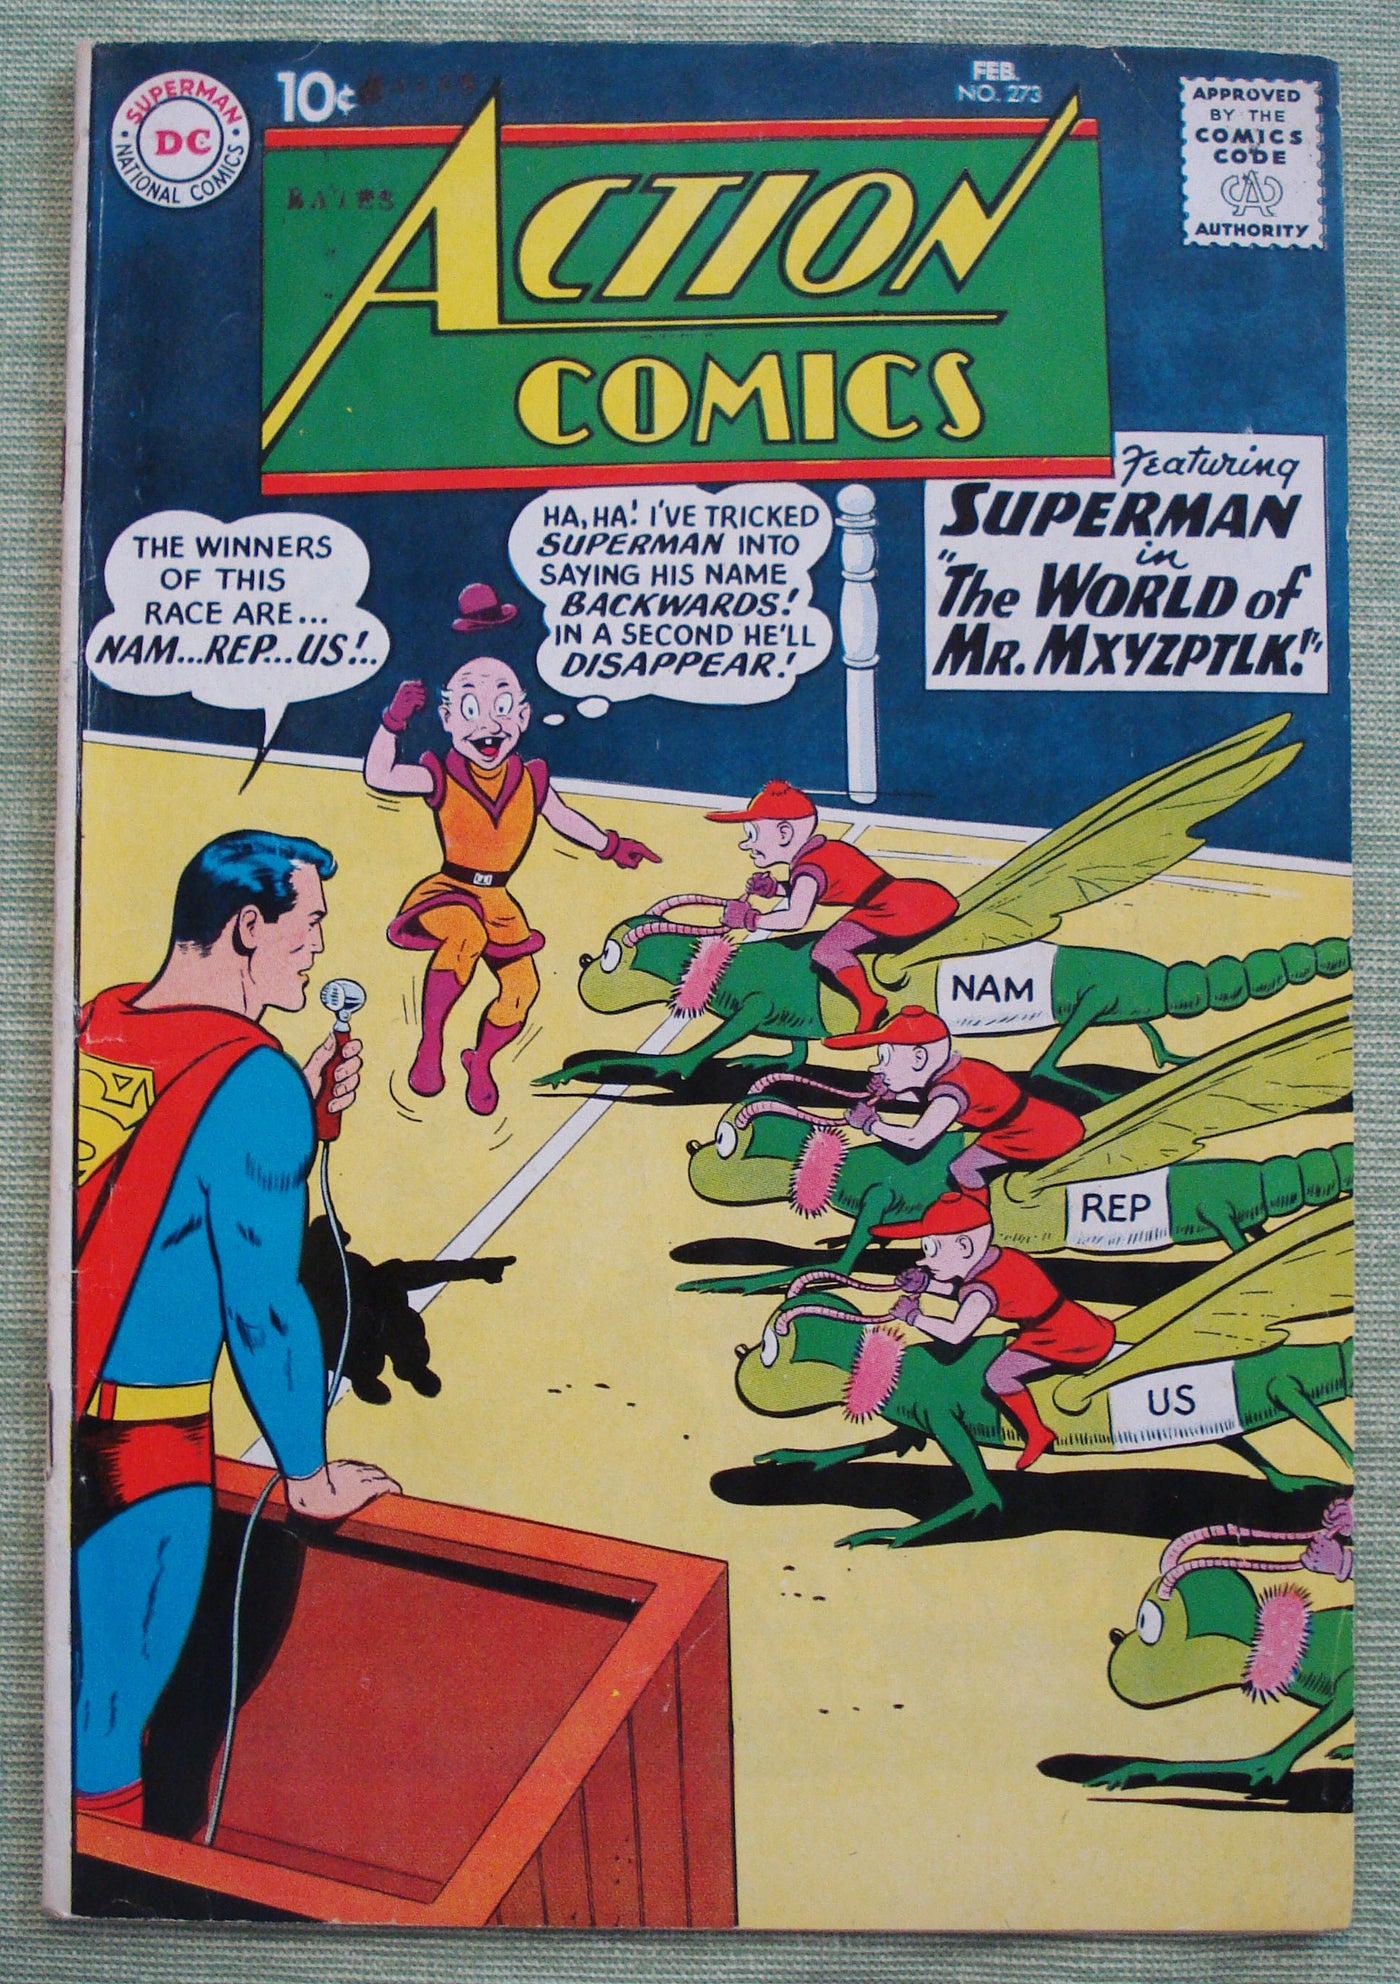 Action Comics #273 DC Comics Feb 1961